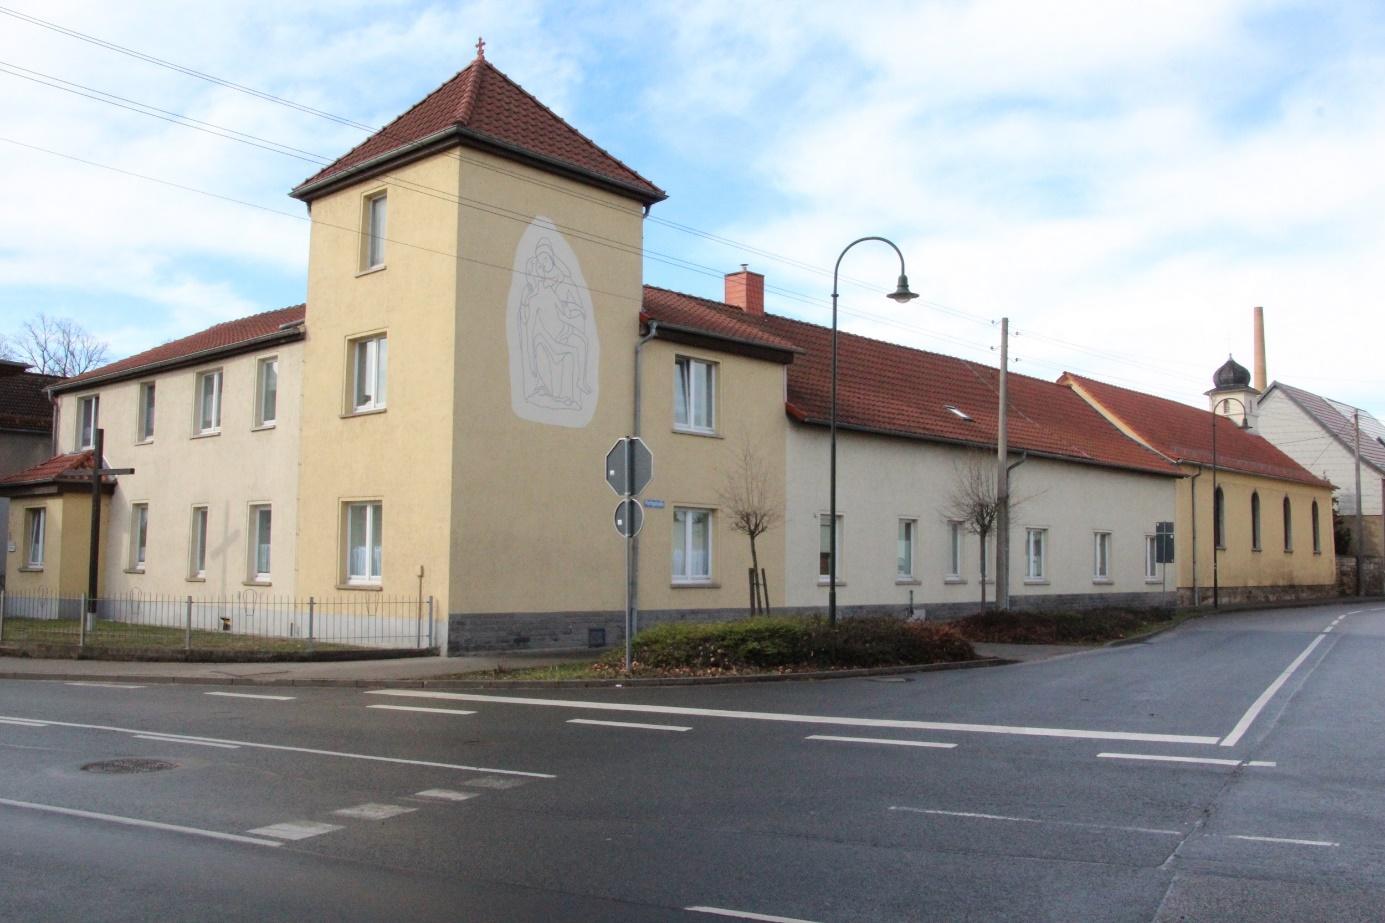 Gebäude der Filiangemeinde an der Ecke Nordhäuser Str. - Flattigstraße